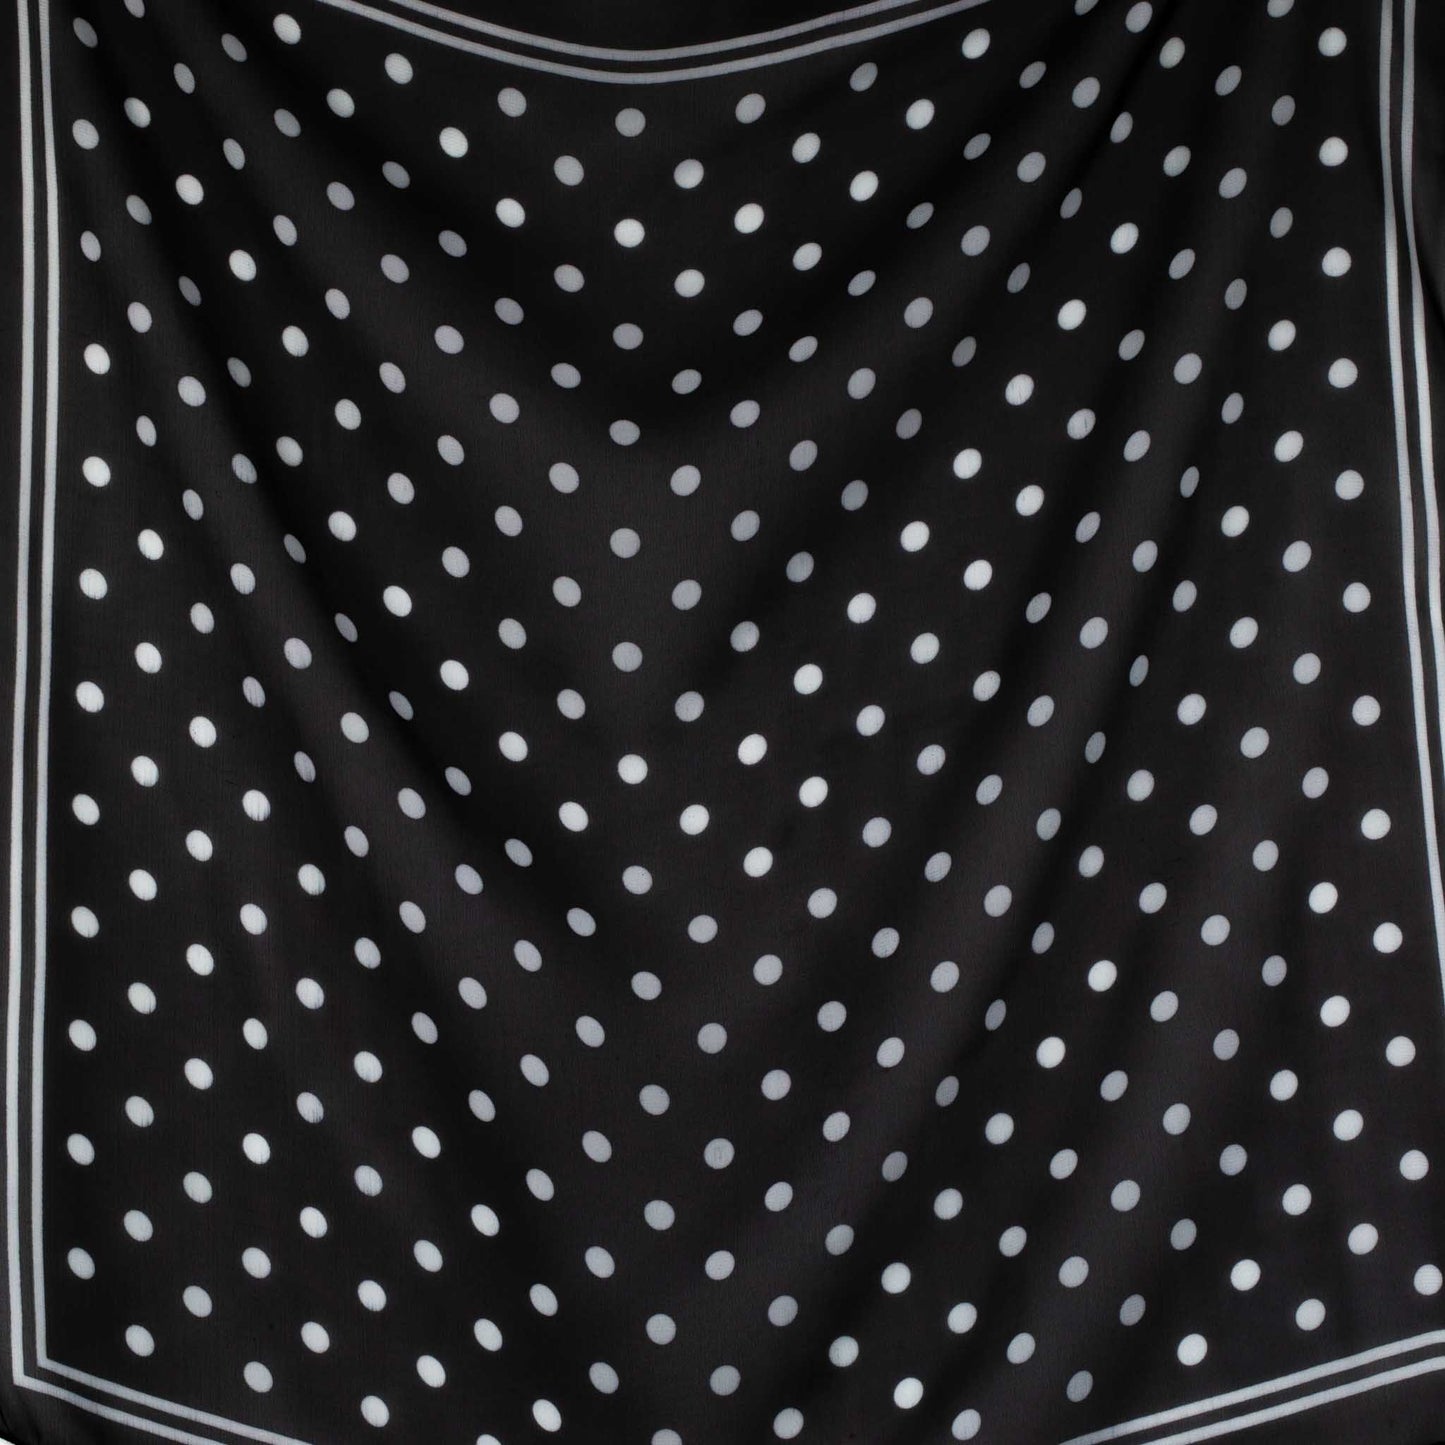 Eșarfă damă din mătase , imprimeu cu buline și dungi, 65 x 65 cm - Negru